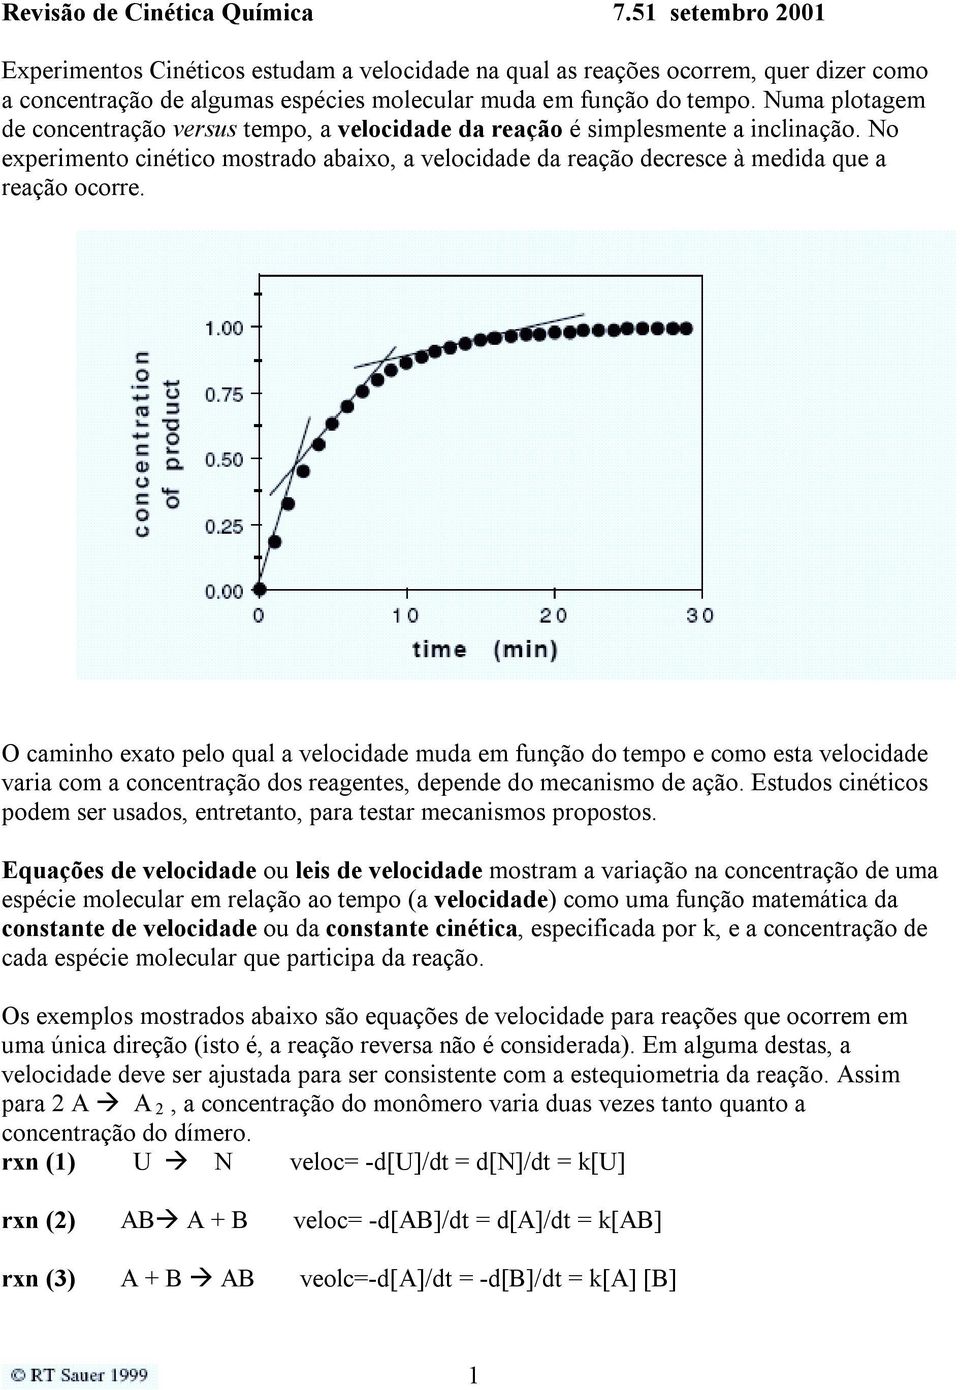 Numa plotagem de concentração versus tempo, a velocidade da reação é simplesmente a inclinação. No experimento cinético mostrado abaixo, a velocidade da reação decresce à medida que a reação ocorre.